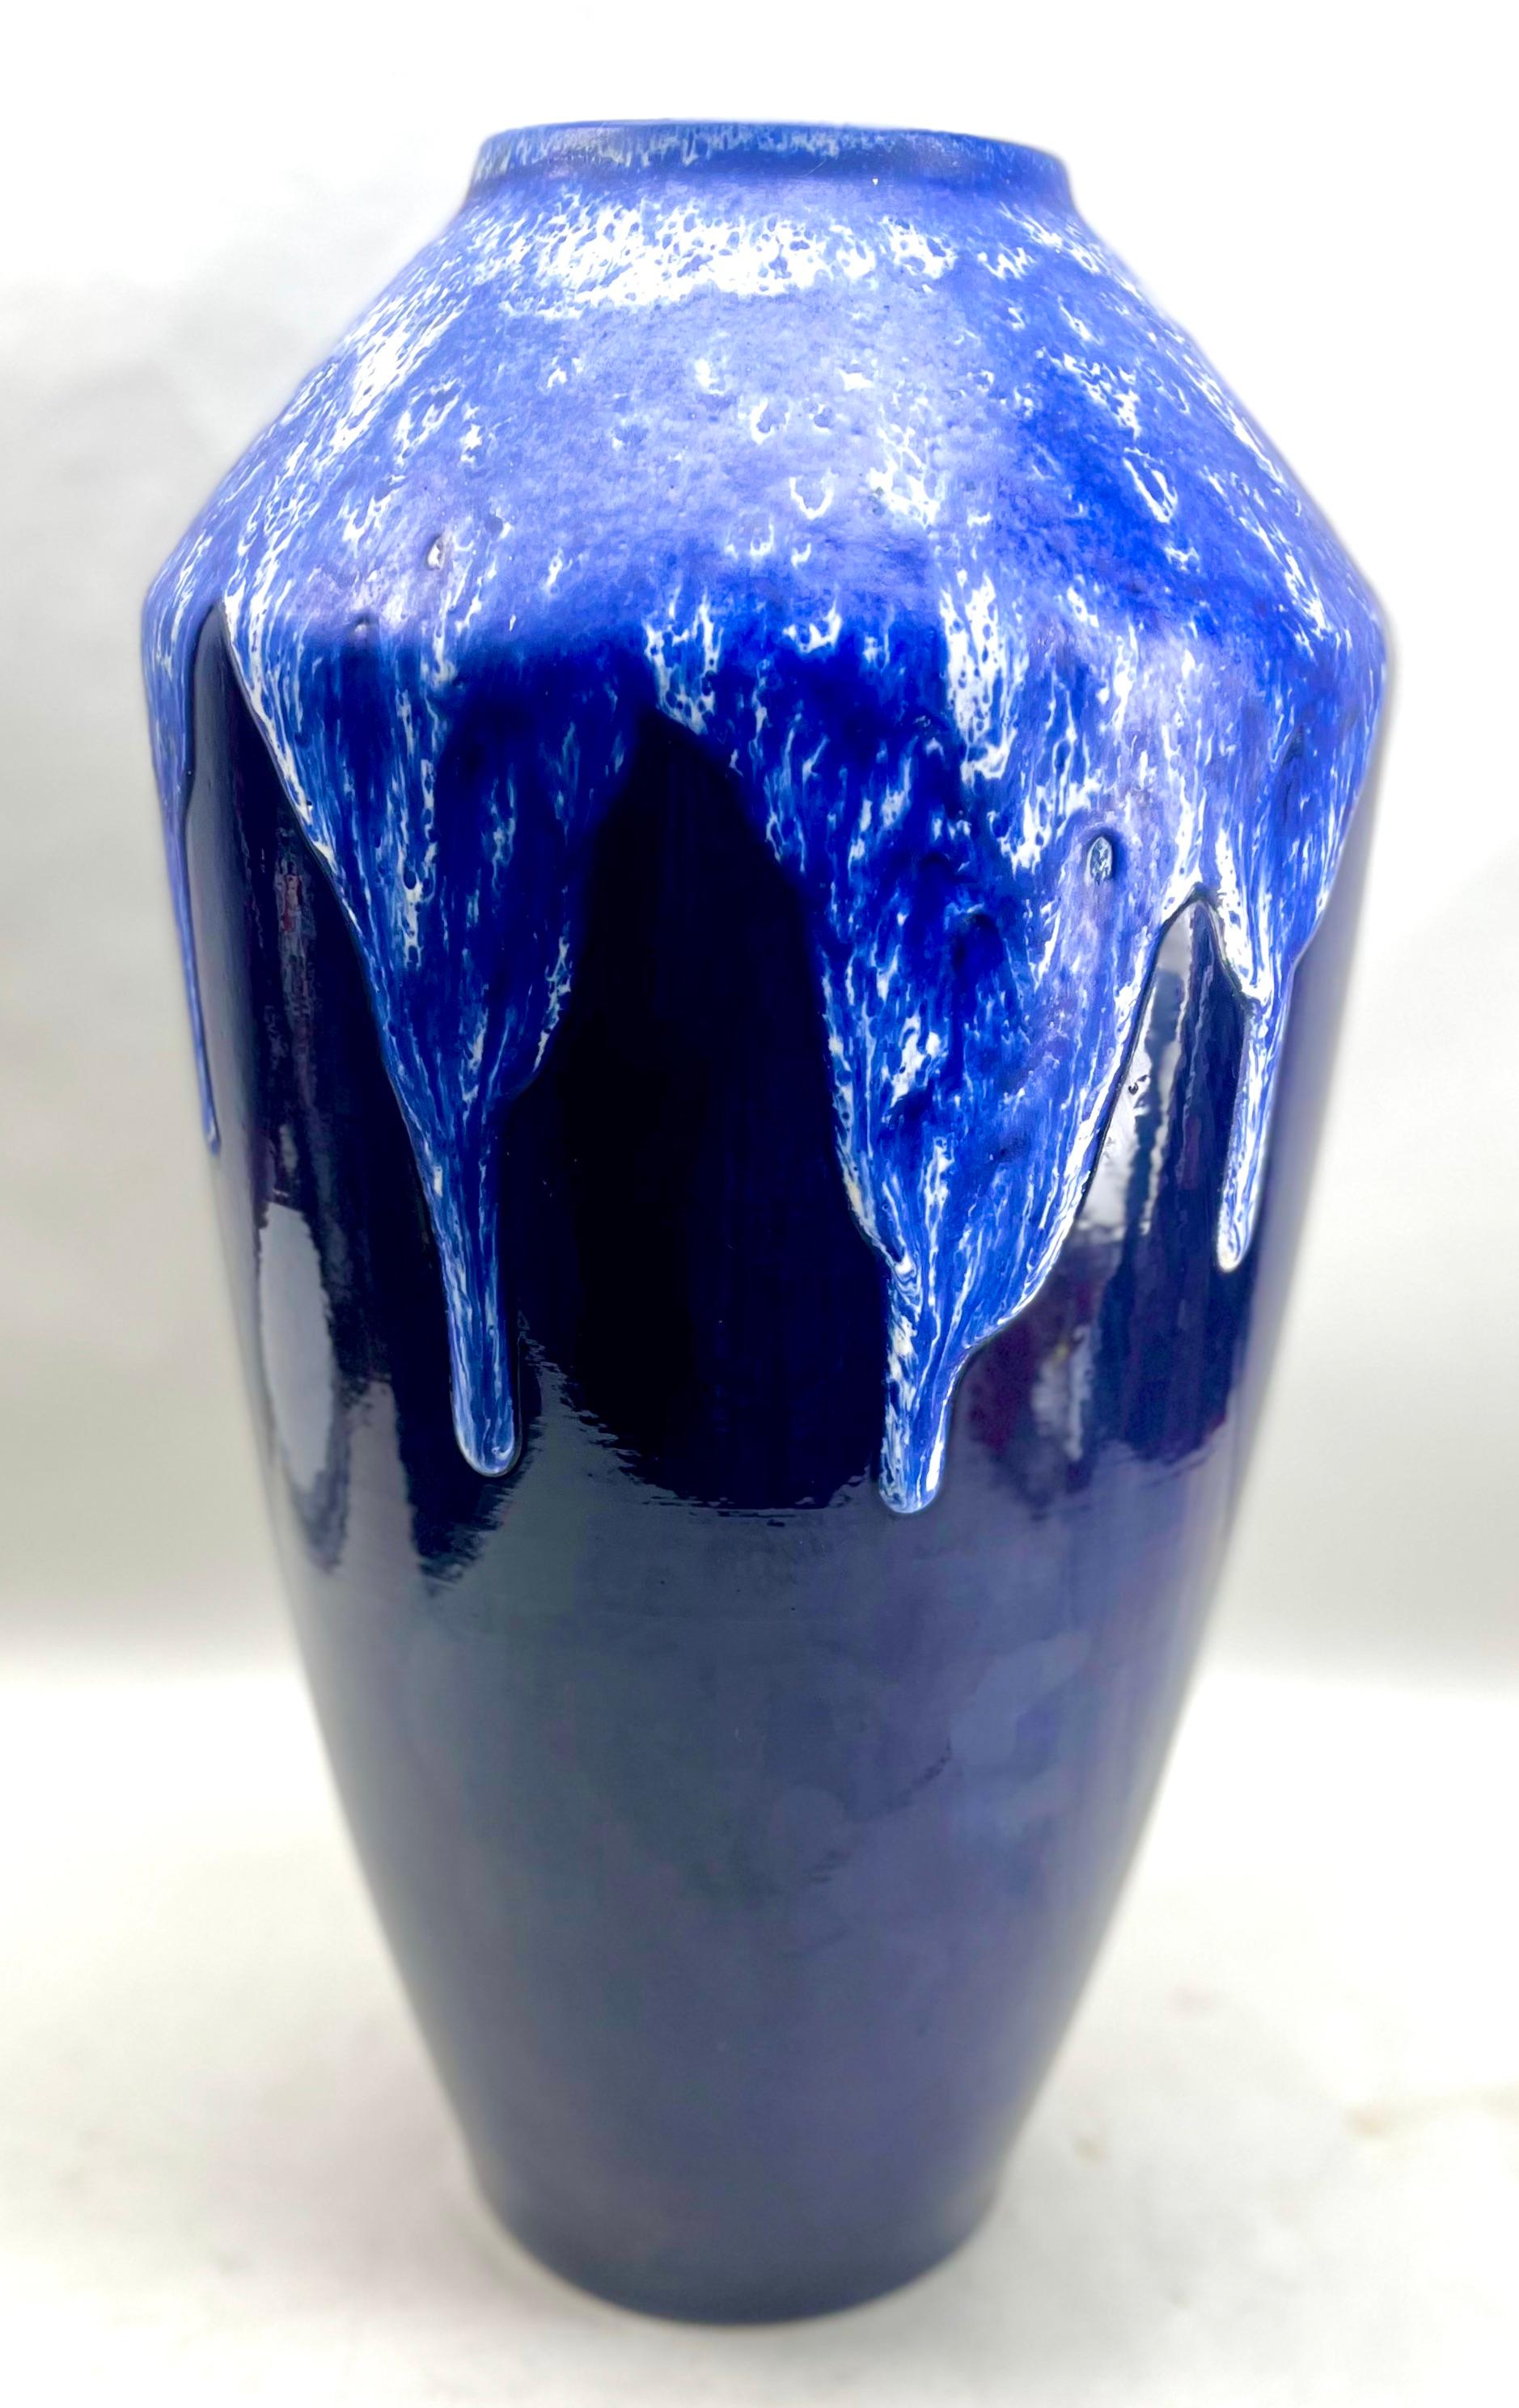 Große Vintage-Stehlampe Fat Lava mit kobaltblauem Tropfglasur 88-40 W-Deutschland

Große Bucht W Deutschland
Klassische fette Lava Kobaltblau Tropfglasur Bodenvase 
Glasierte Töpferwaren.
Auf dem Sockel gestempelt. 540-48 W-Deutschland.
Maße: 50 x